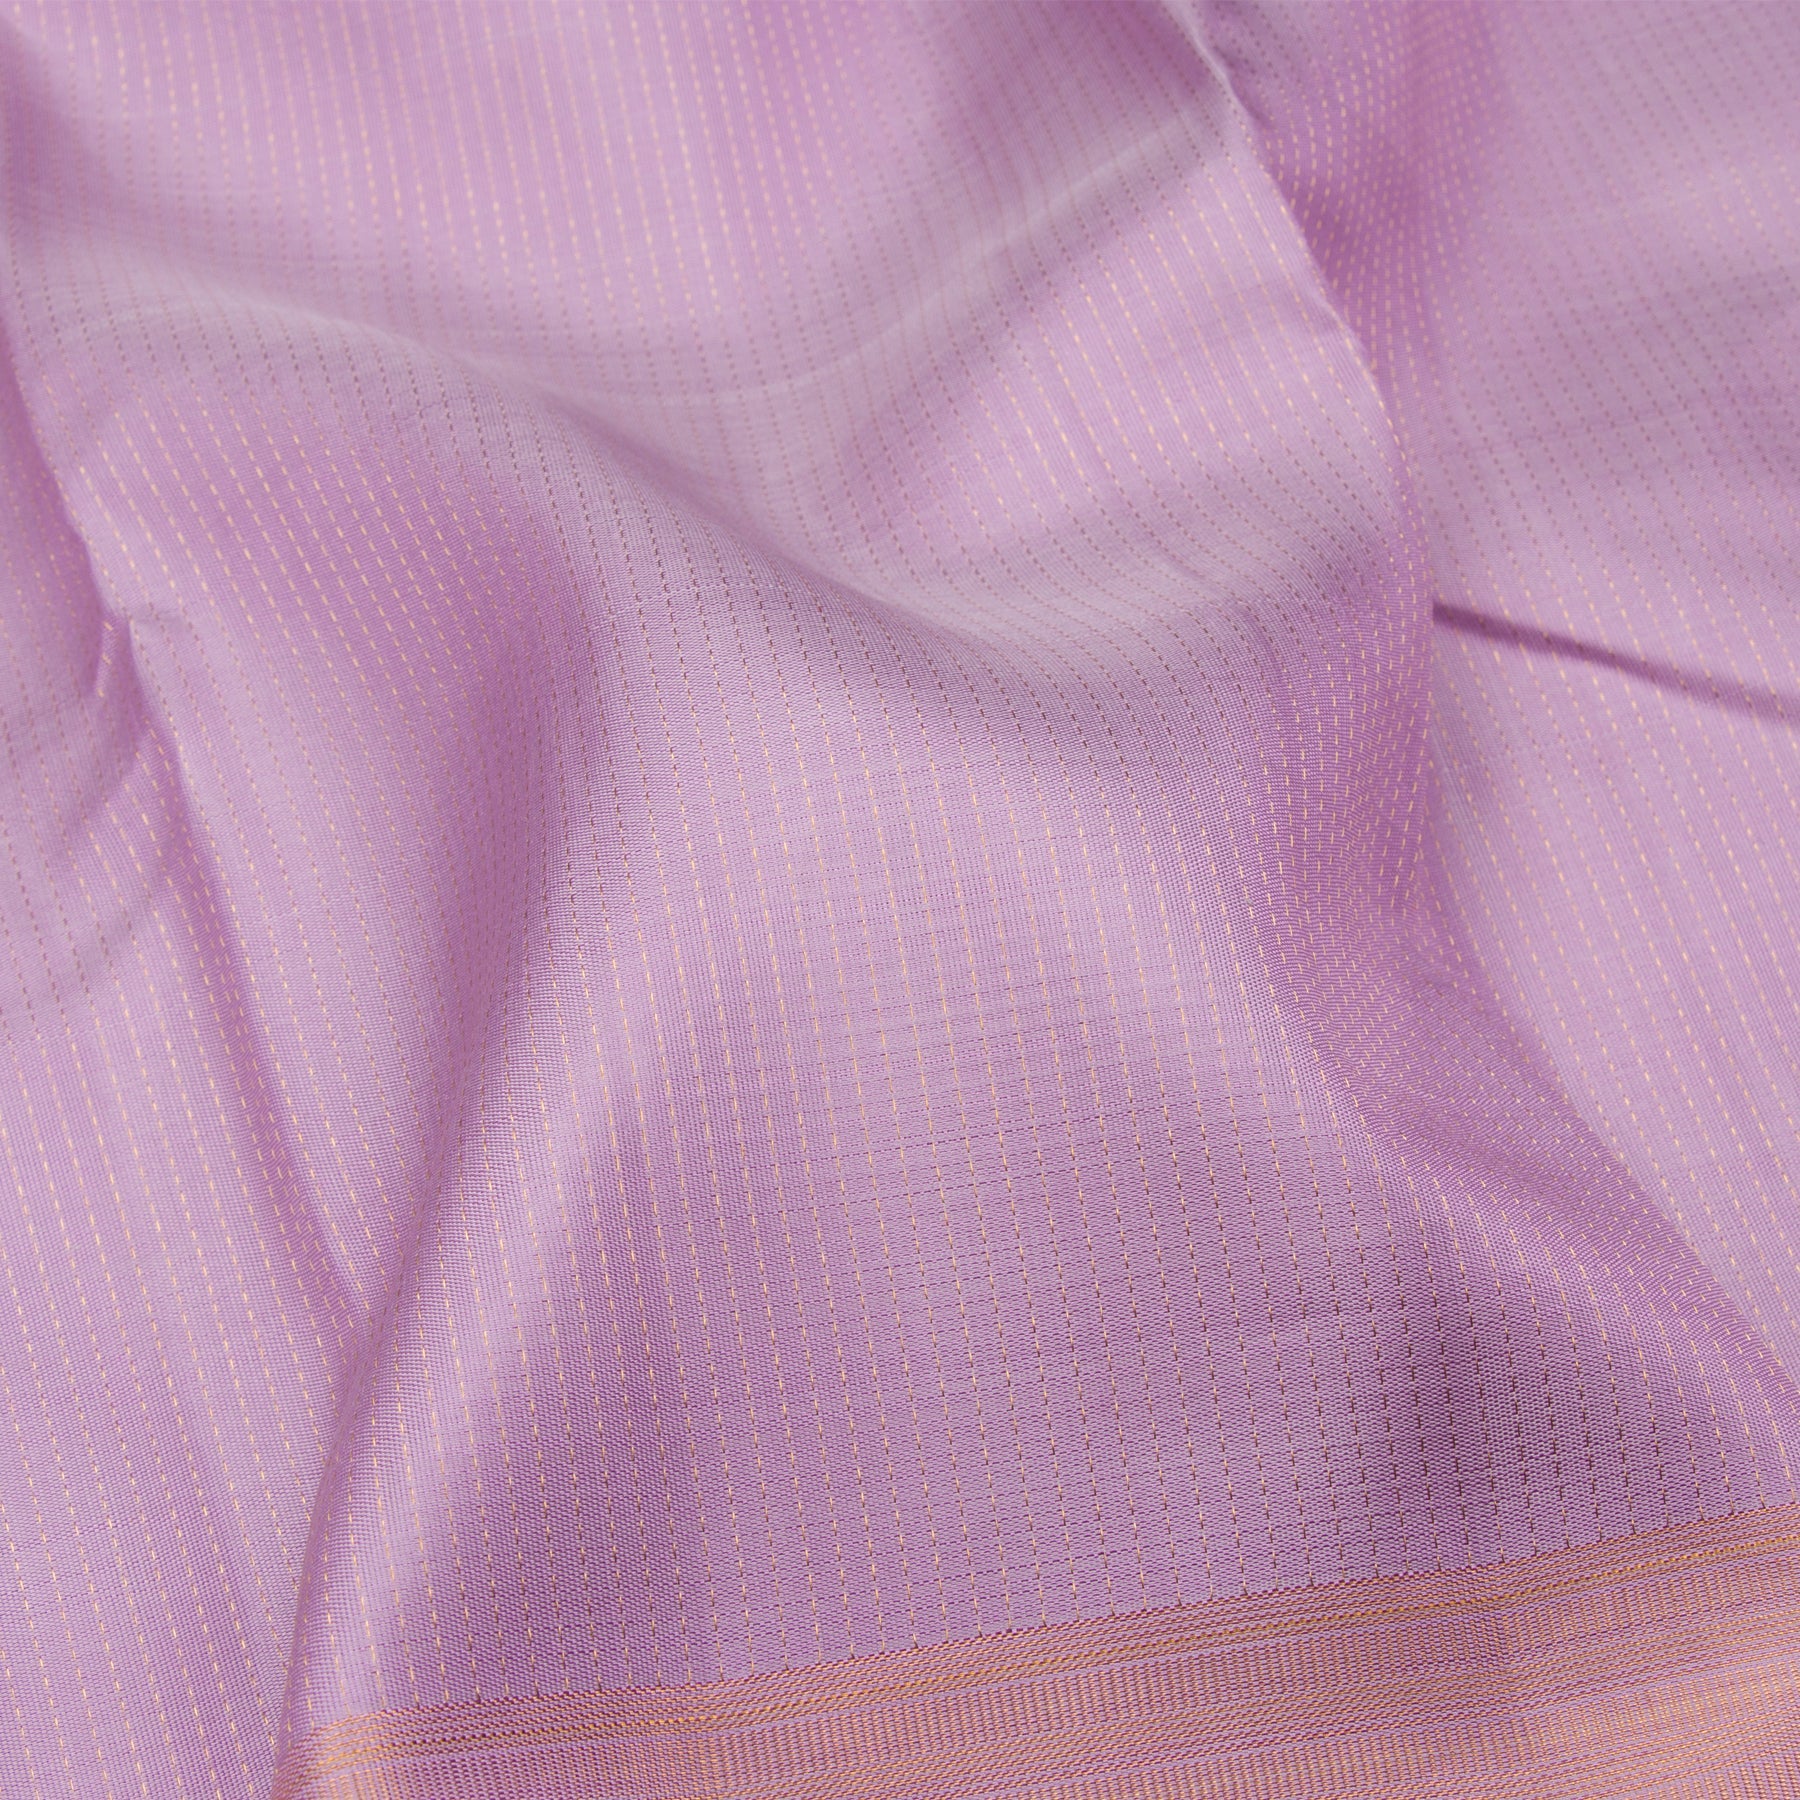 Kanakavalli Kanjivaram Silk Sari 23-599-HS001-11870 - Fabric View